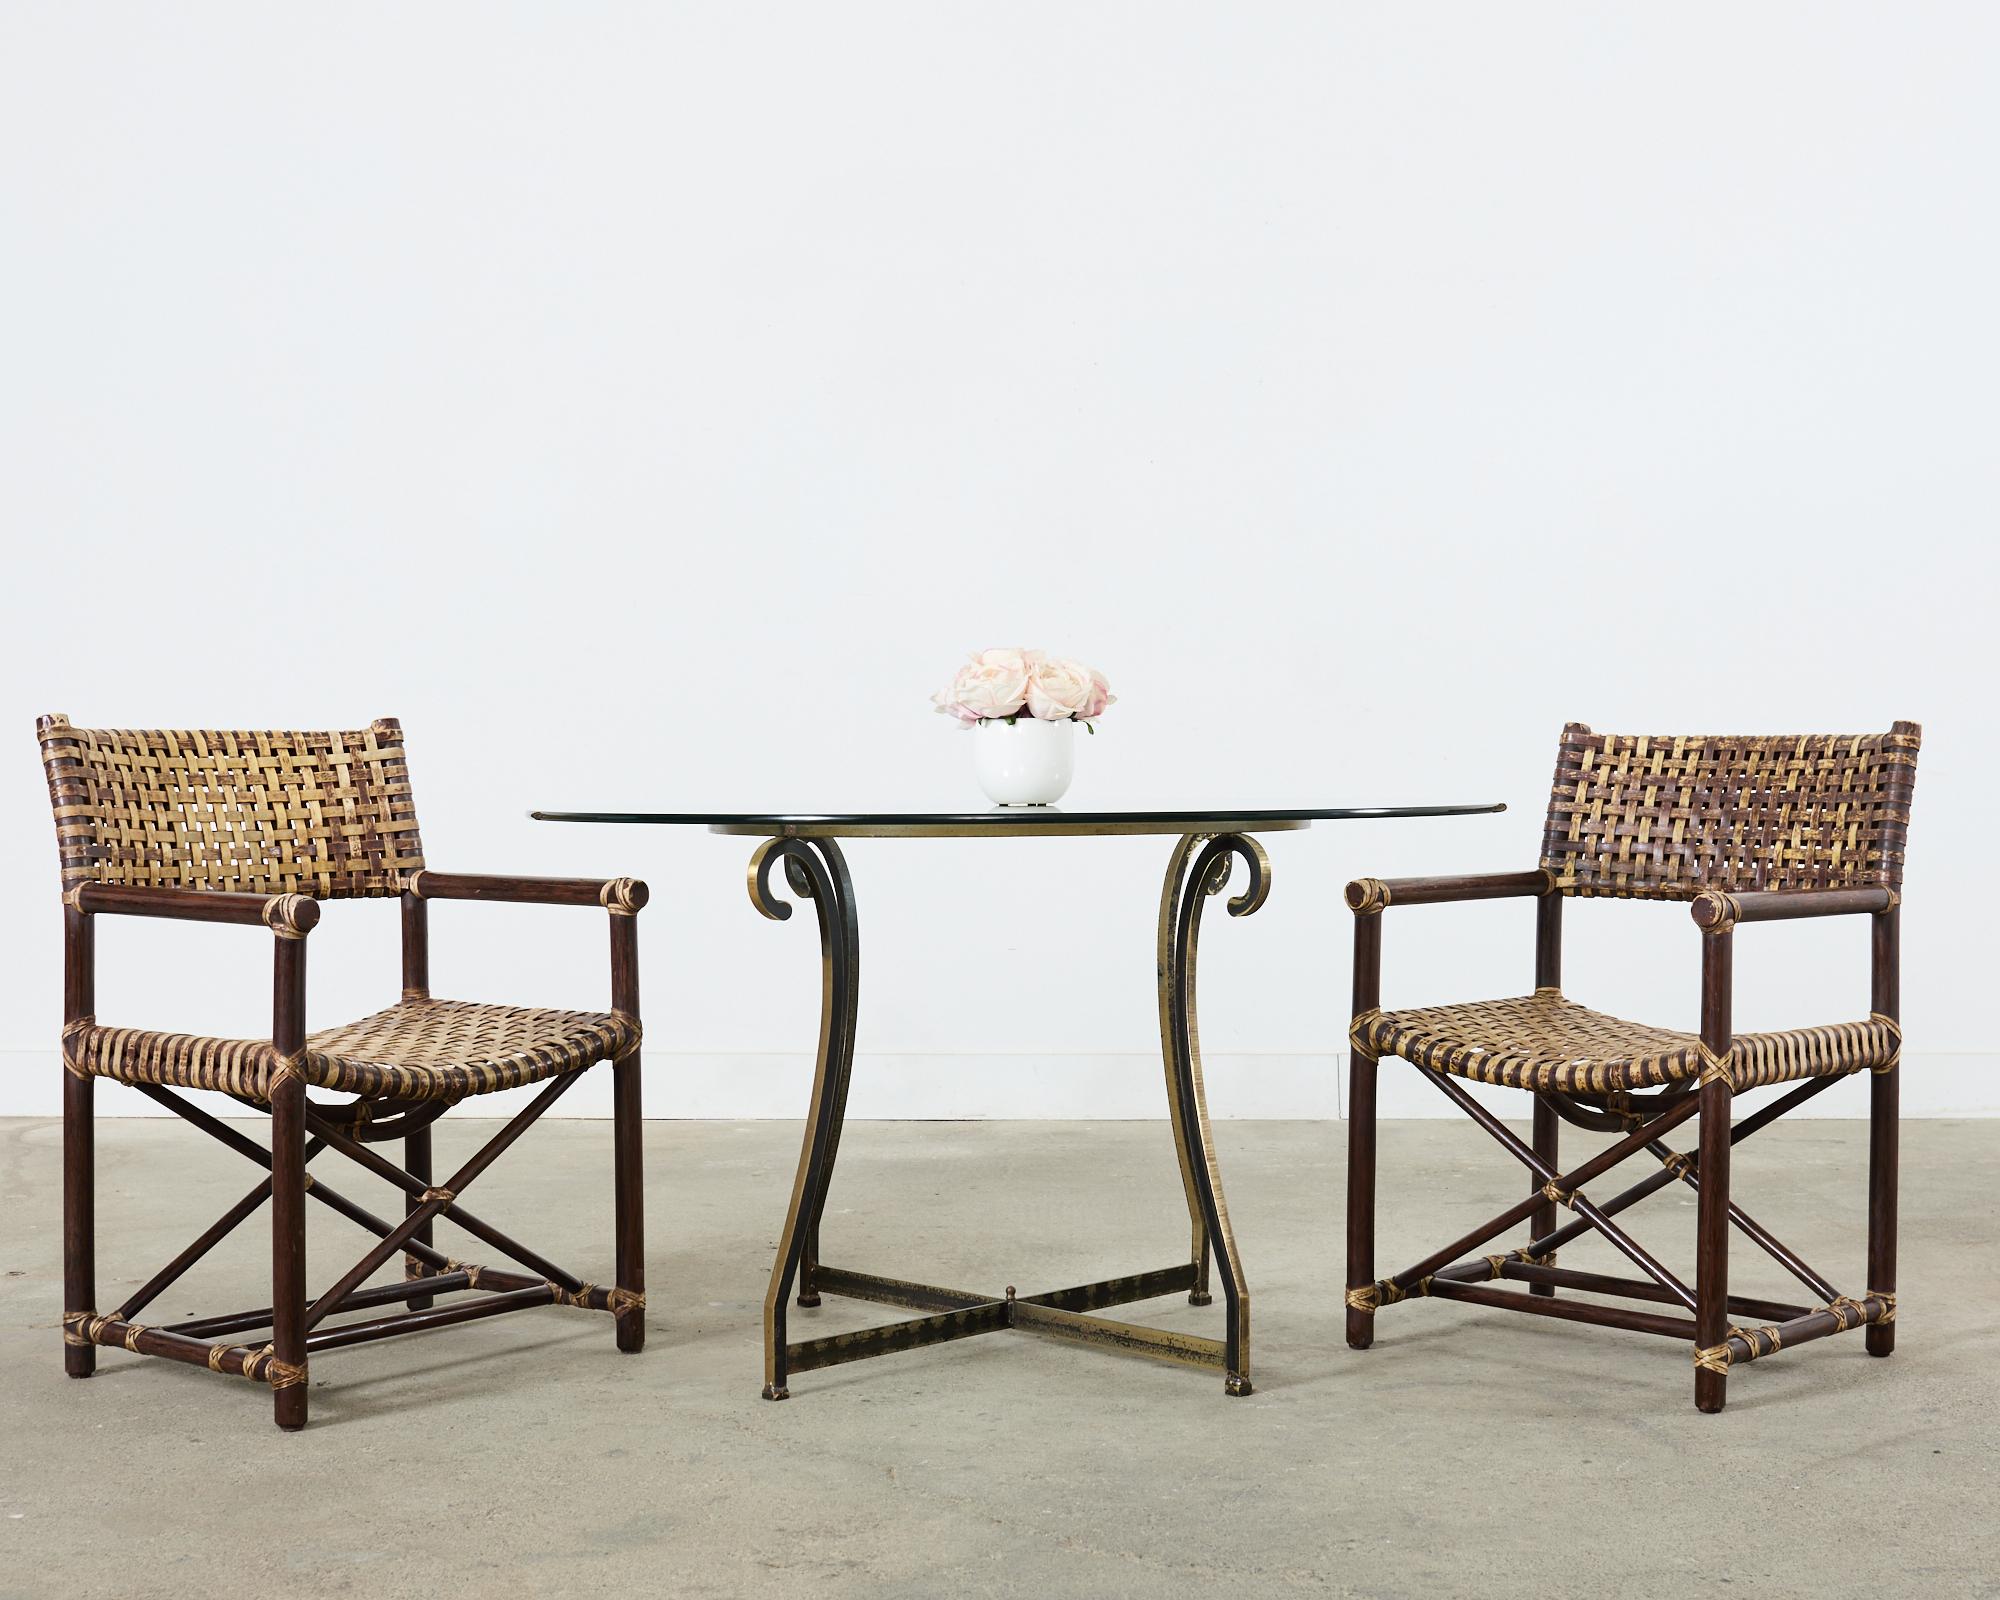 Ensemble distinctif de six fauteuils de salle à manger en cuir lacé et en rotin, fabriqués dans le style moderne organique de la côte californienne par McGuire. Les fauteuils Antalya (Modèle #MCLM45) ont des armatures en rotin renforcées par des